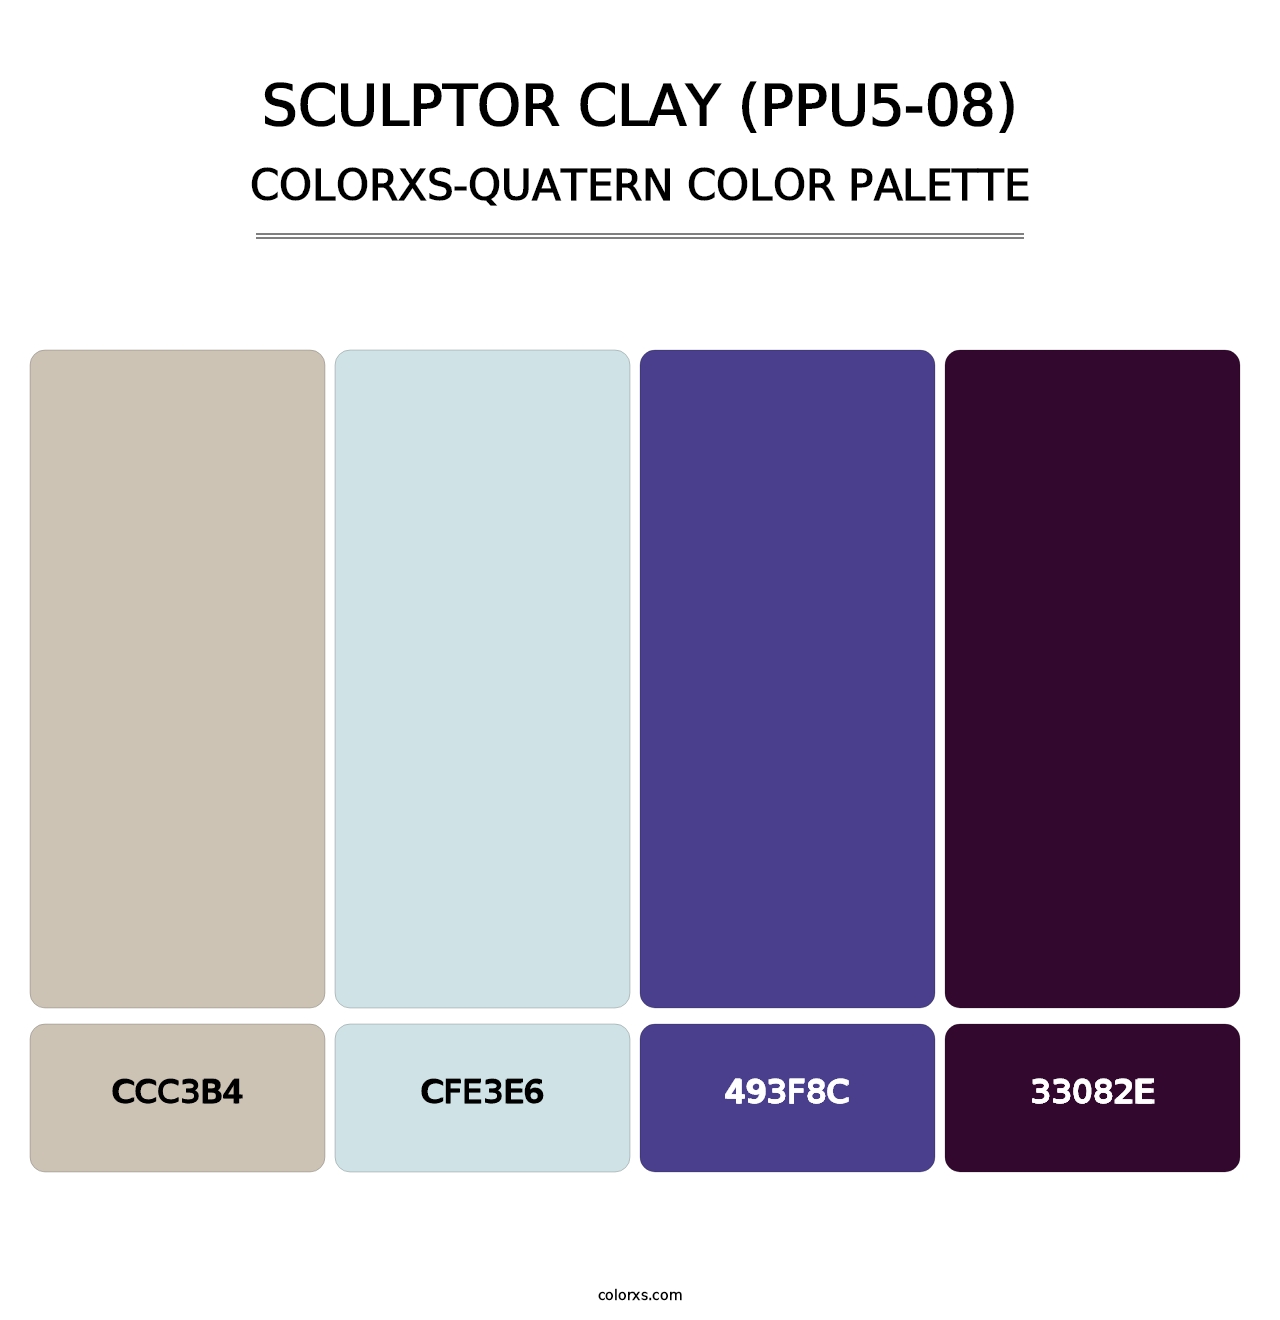 Sculptor Clay (PPU5-08) - Colorxs Quatern Palette